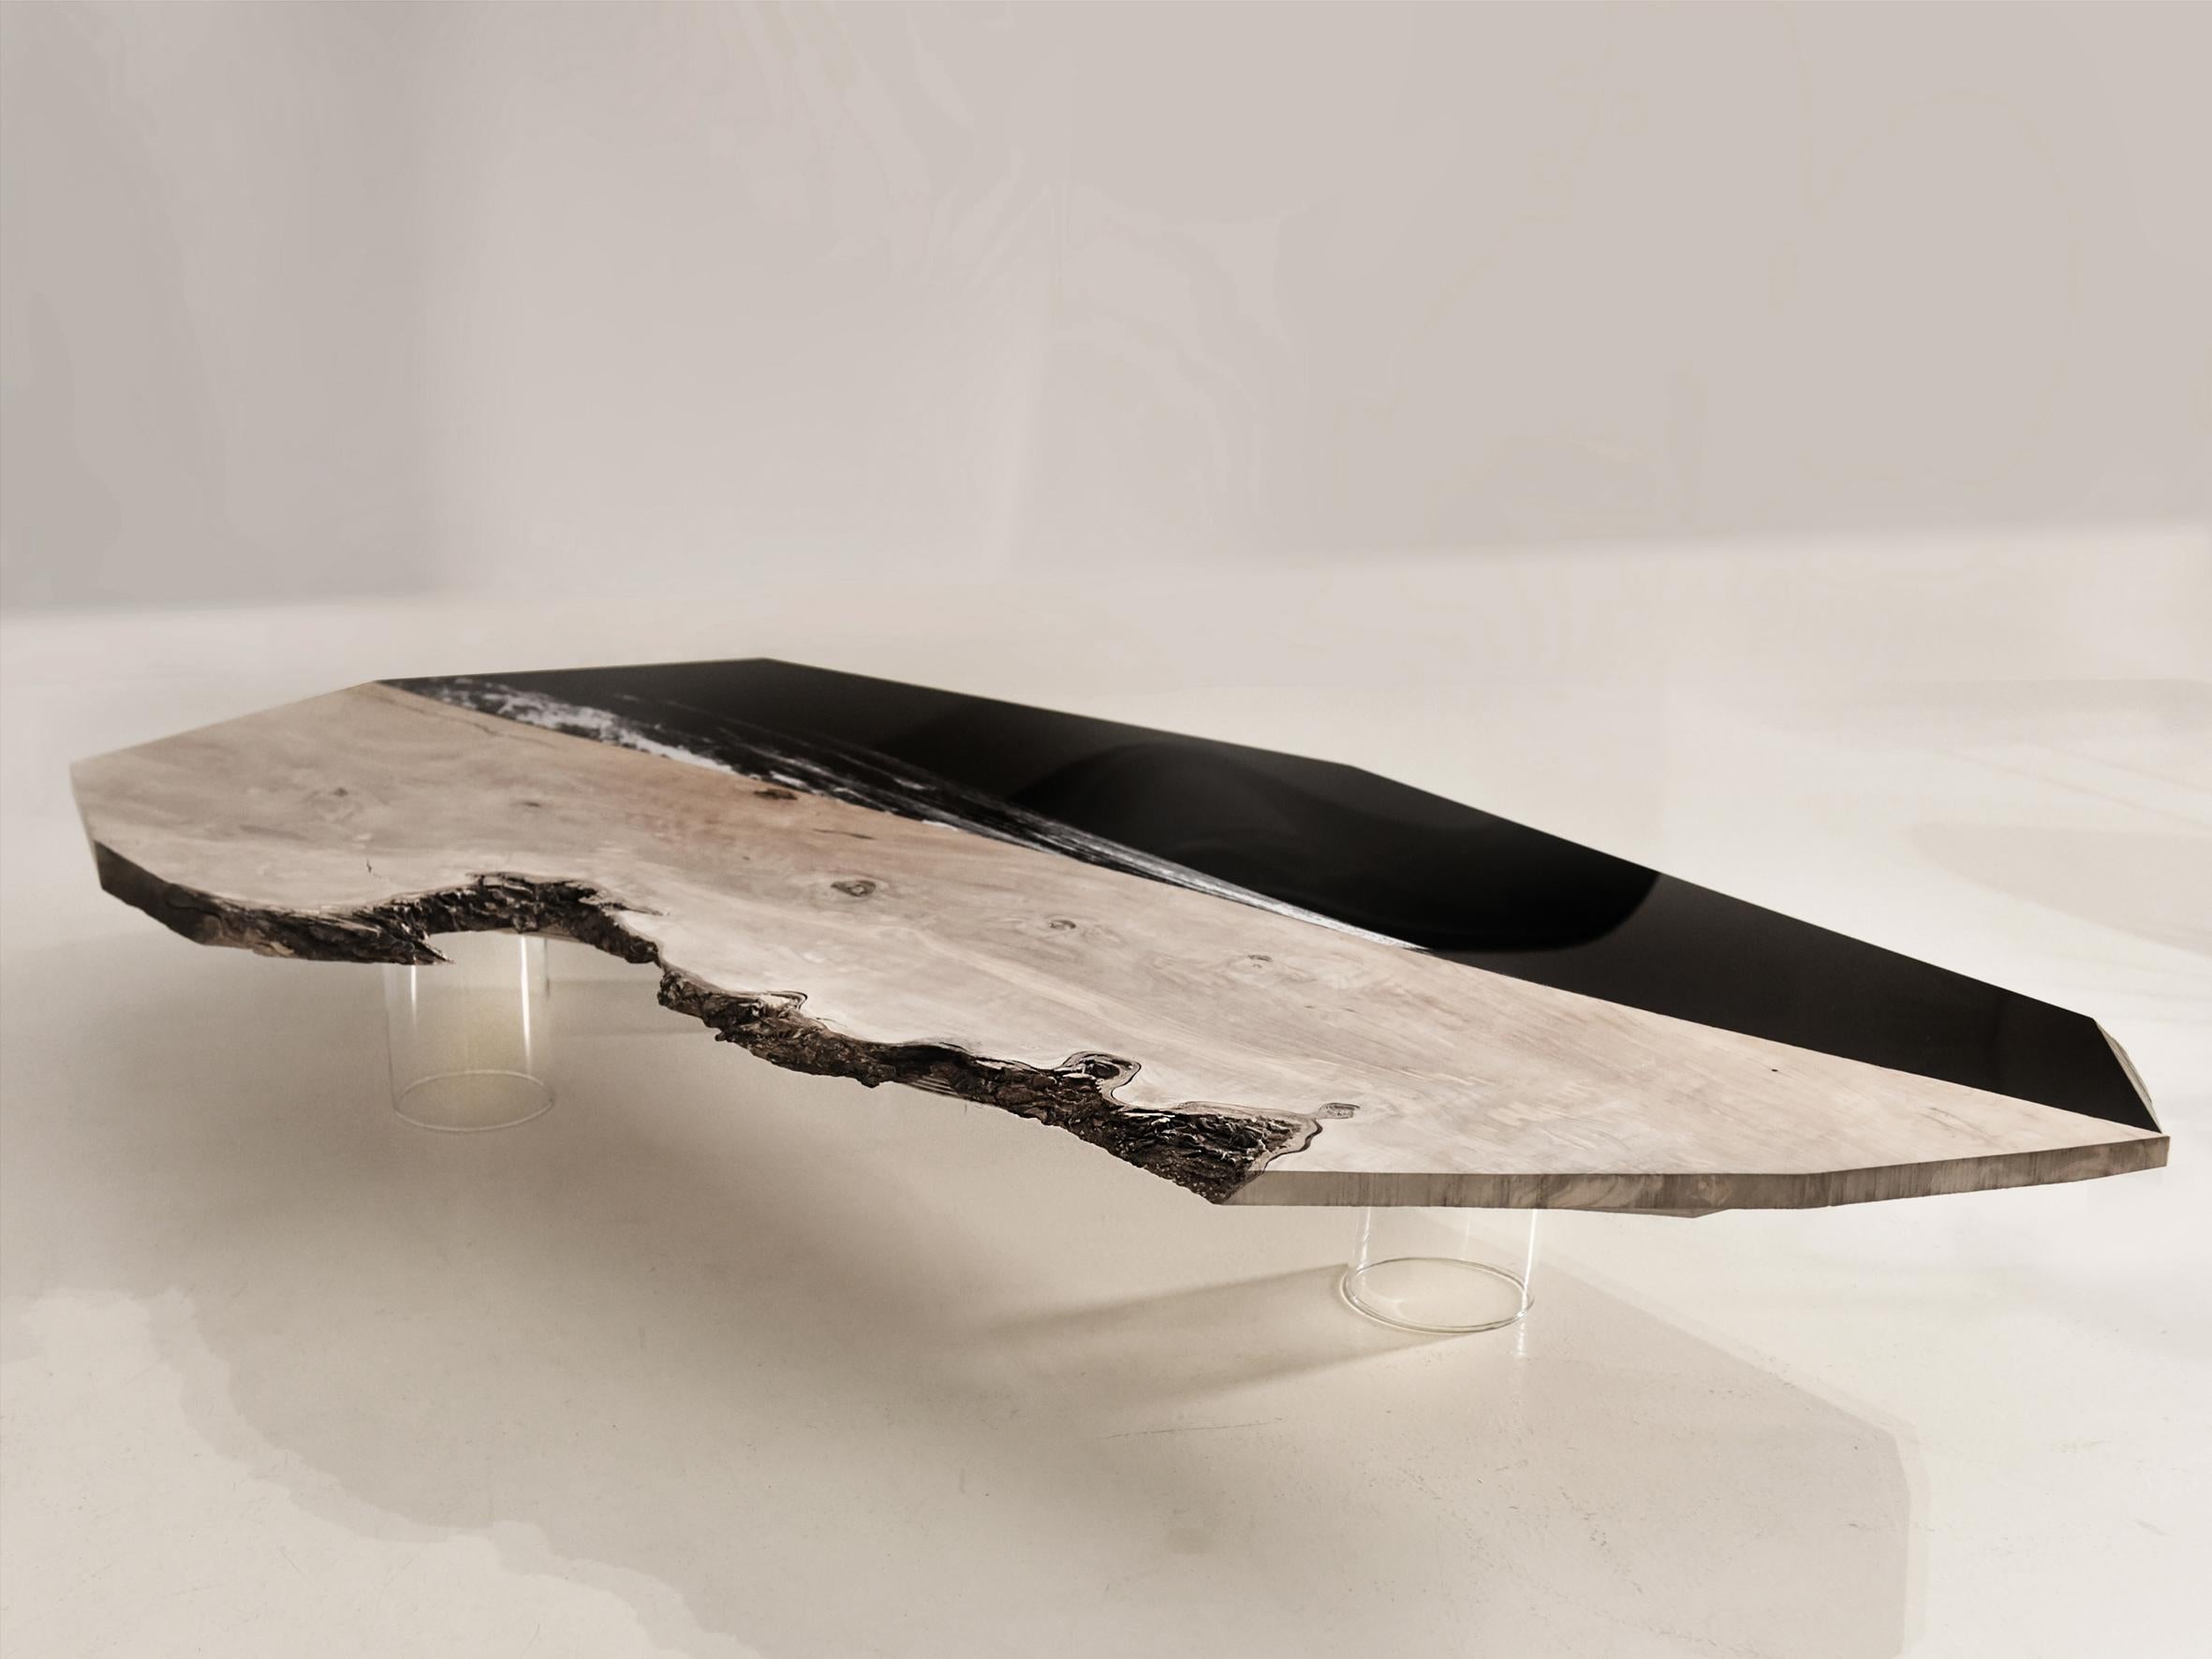 Cette table basse fait partie d'une collection inspirée par la nature créée par l'artiste et designer Raoul Gilioli.
La valeur de cette table est donnée par le bois que l'artiste a utilisé. C'est un bois d'olivier vieux de 1200 ans qui provient des